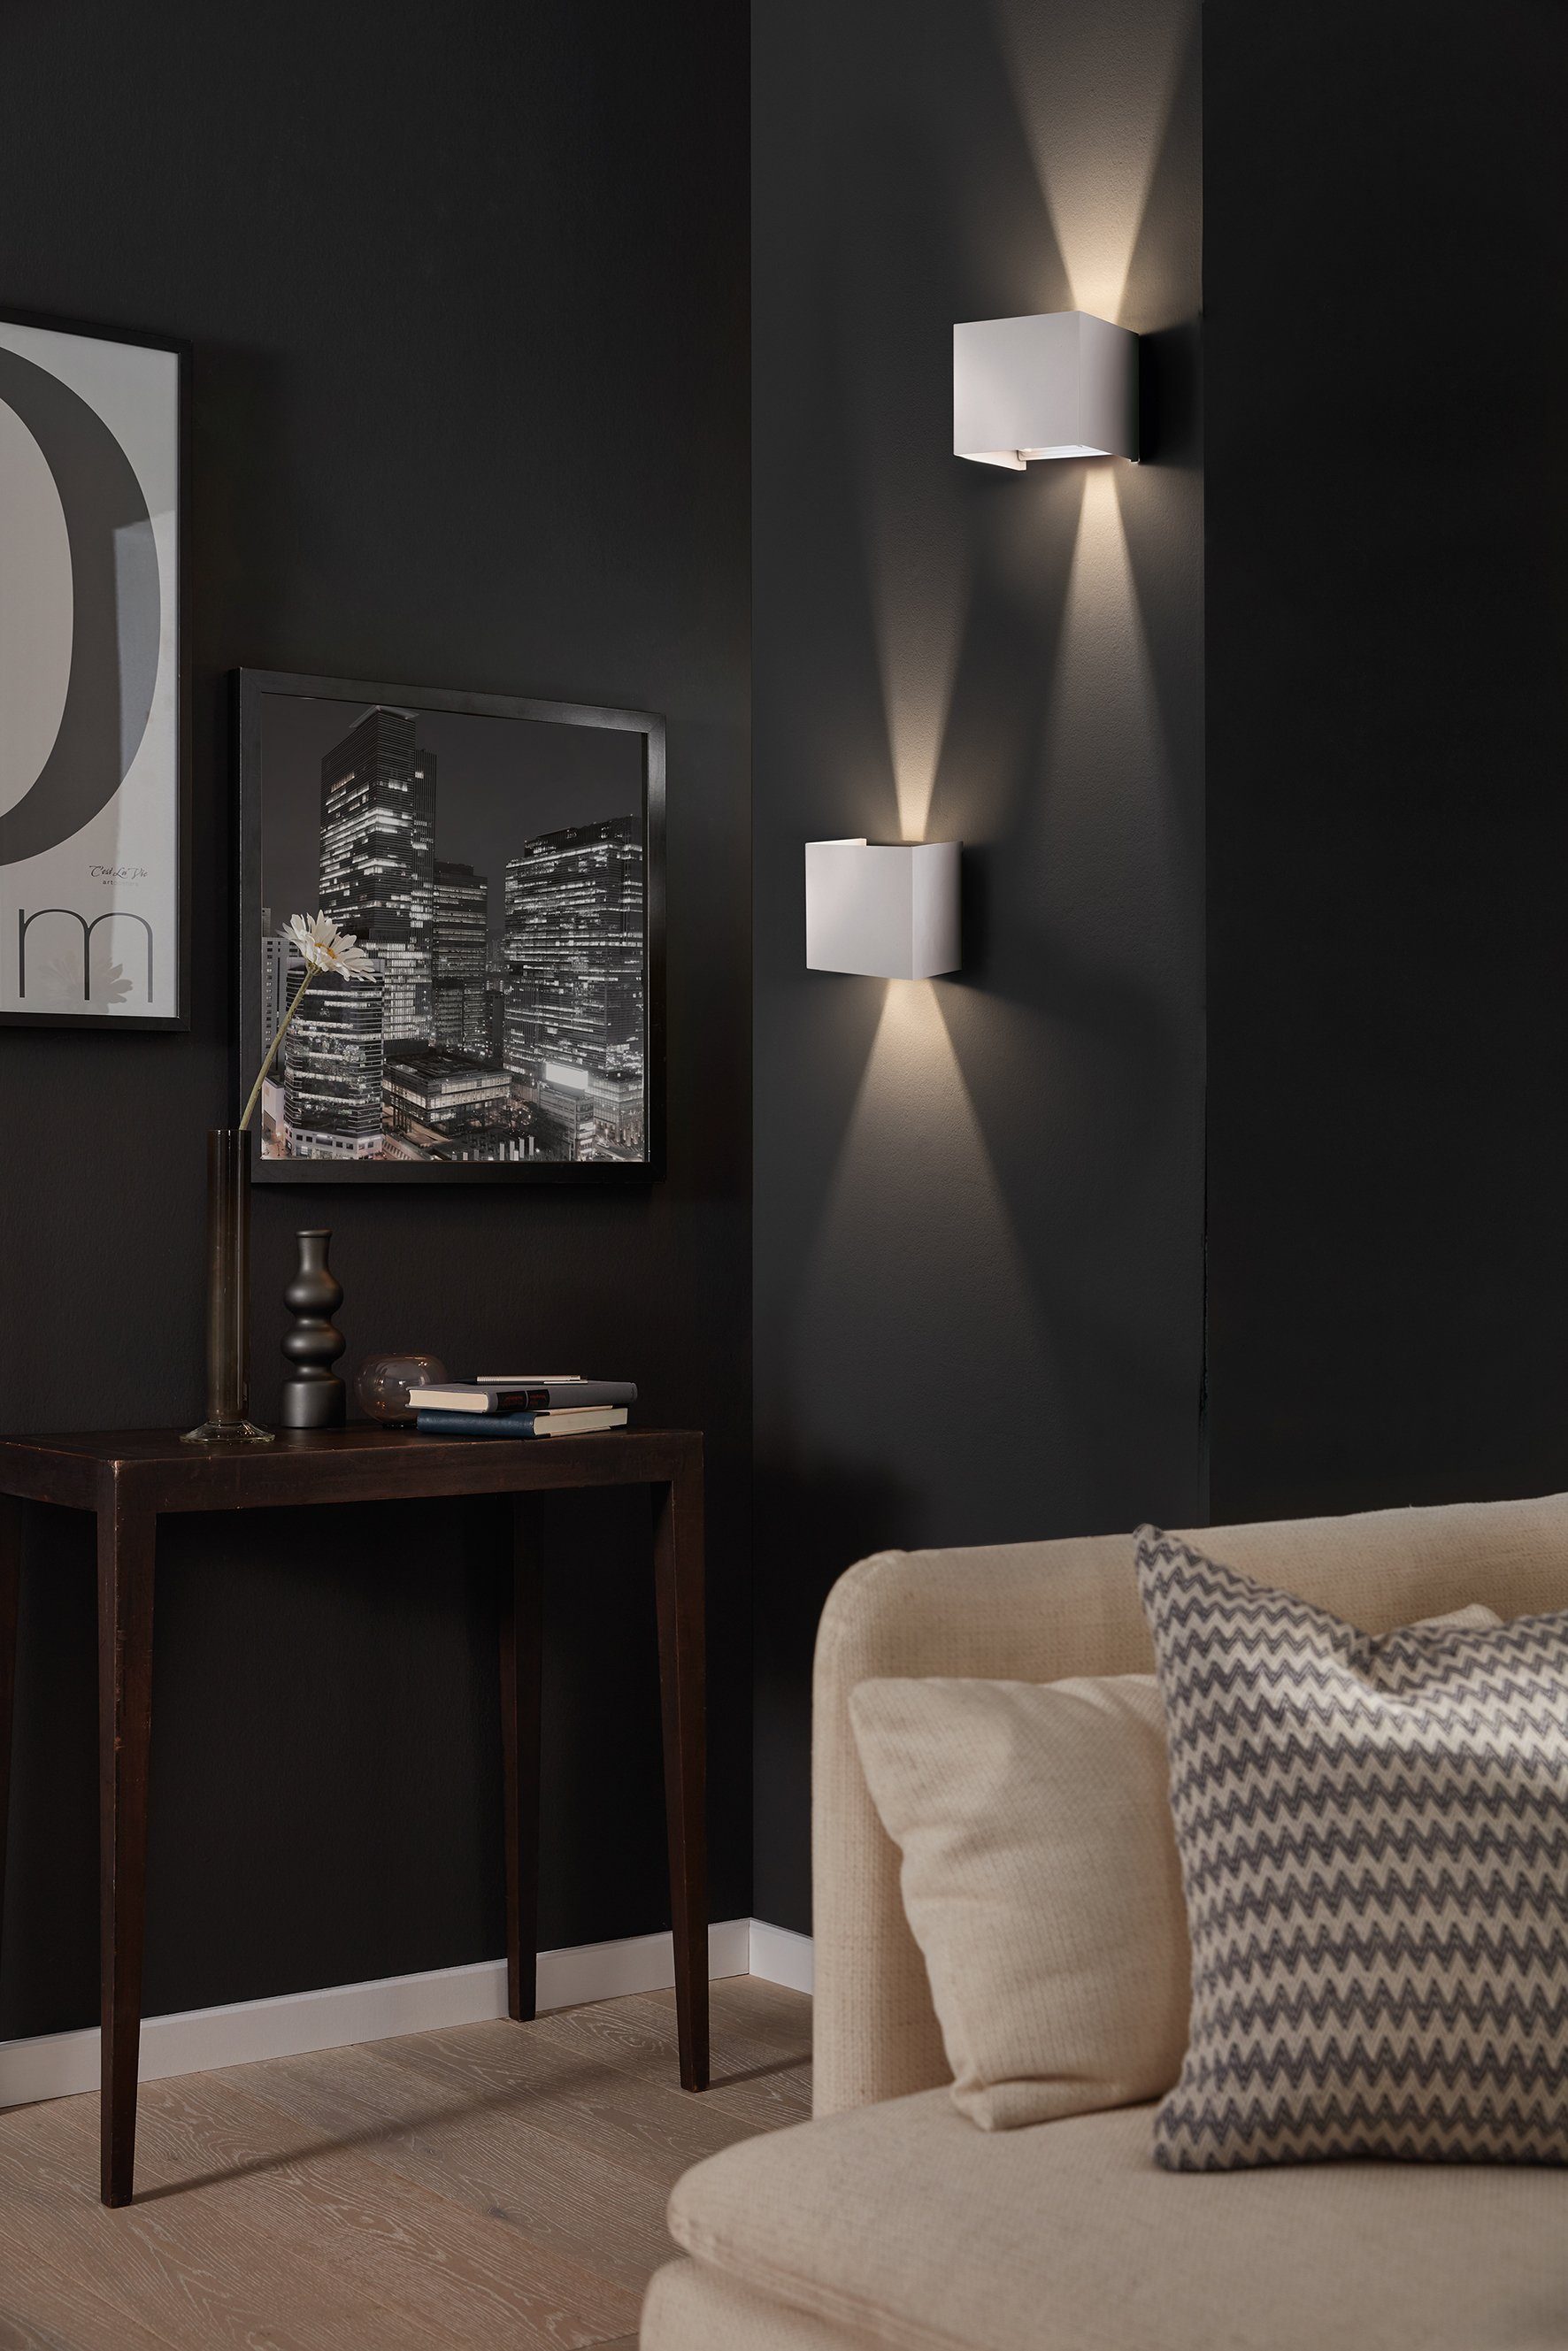 LED & fest Wall, Warmweiß integriert, Wandleuchte Ein-/Ausschalter, HONSEL FISCHER LED